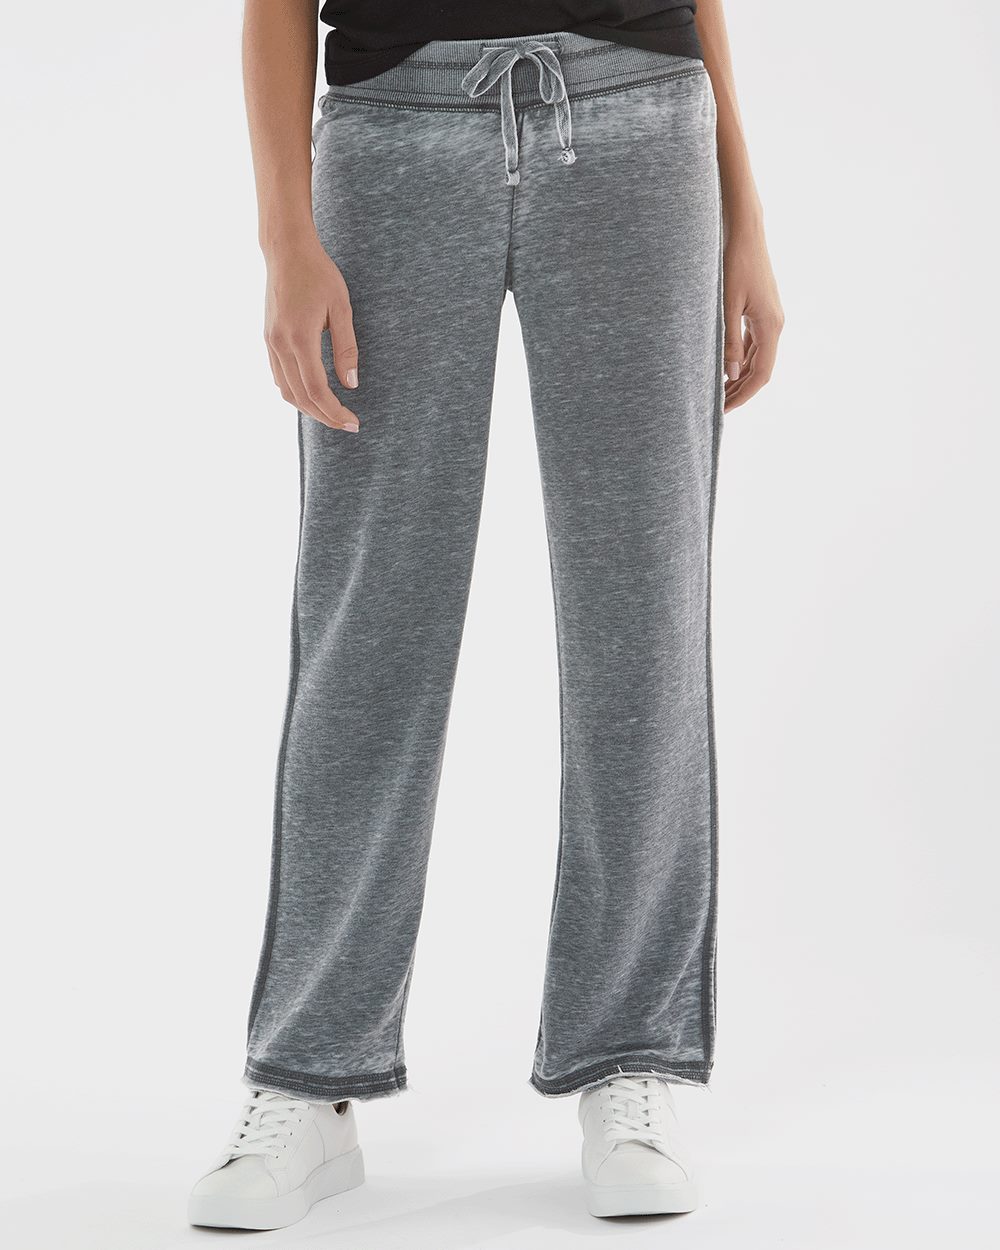 J. America Women’s Vintage Zen Fleece Sweatpants - image 5 of 5